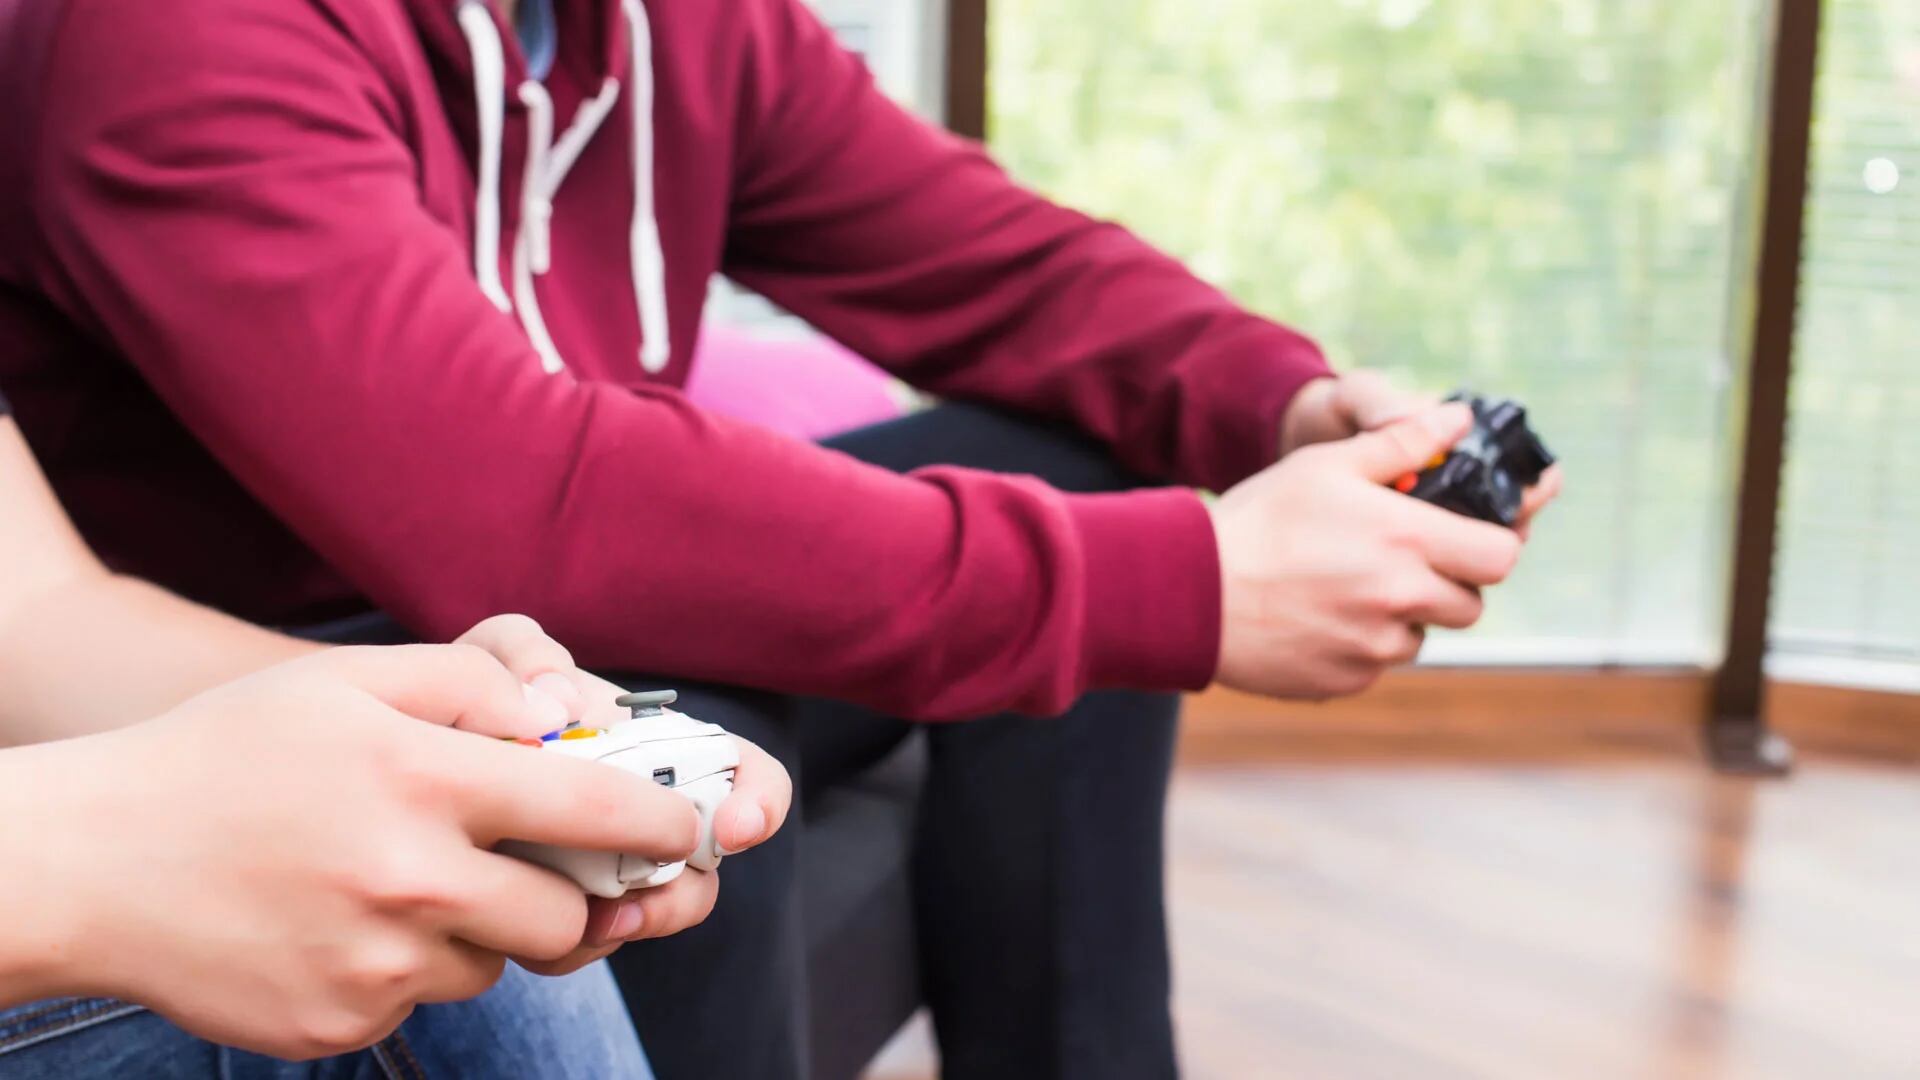 Entre los 2 y 5 años, se sugiere dedicar a los videojuegos no más de 1 hora al día. Desde los 6 años, “los padres deben establecer límites coherentes", recomiendan los expertos (iStock)